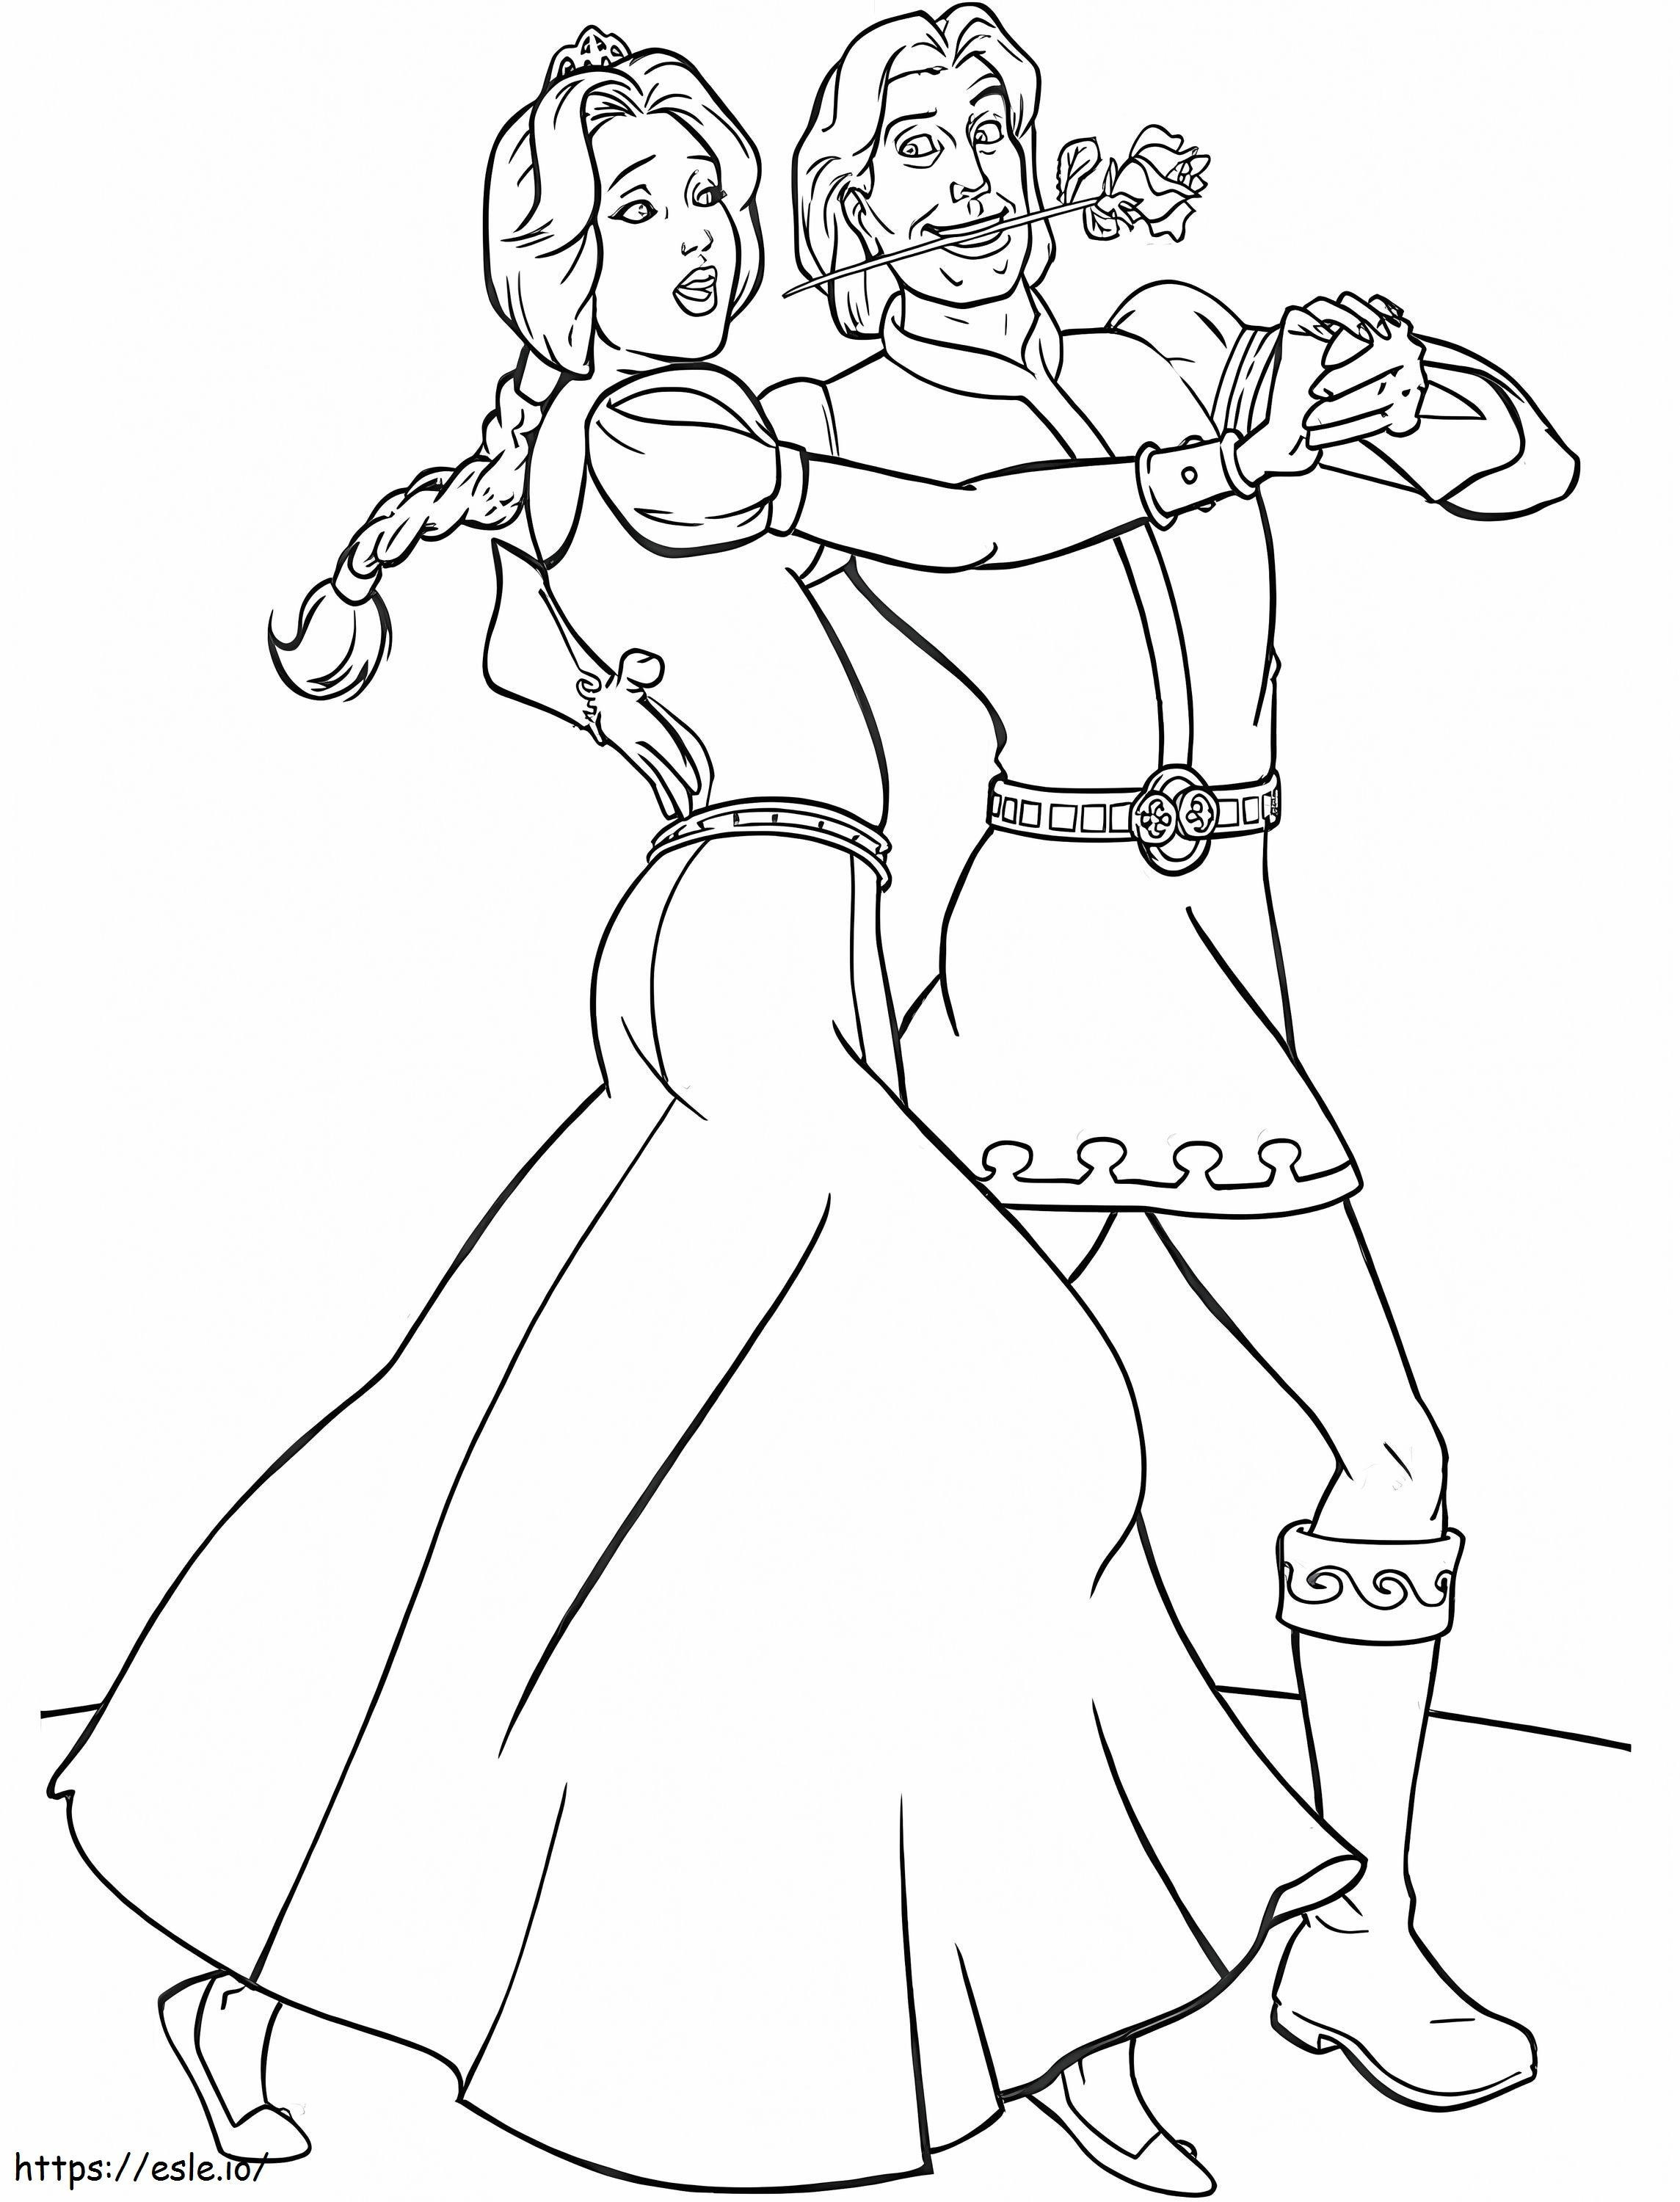  Fiona és bájos herceg táncol A4 kifestő